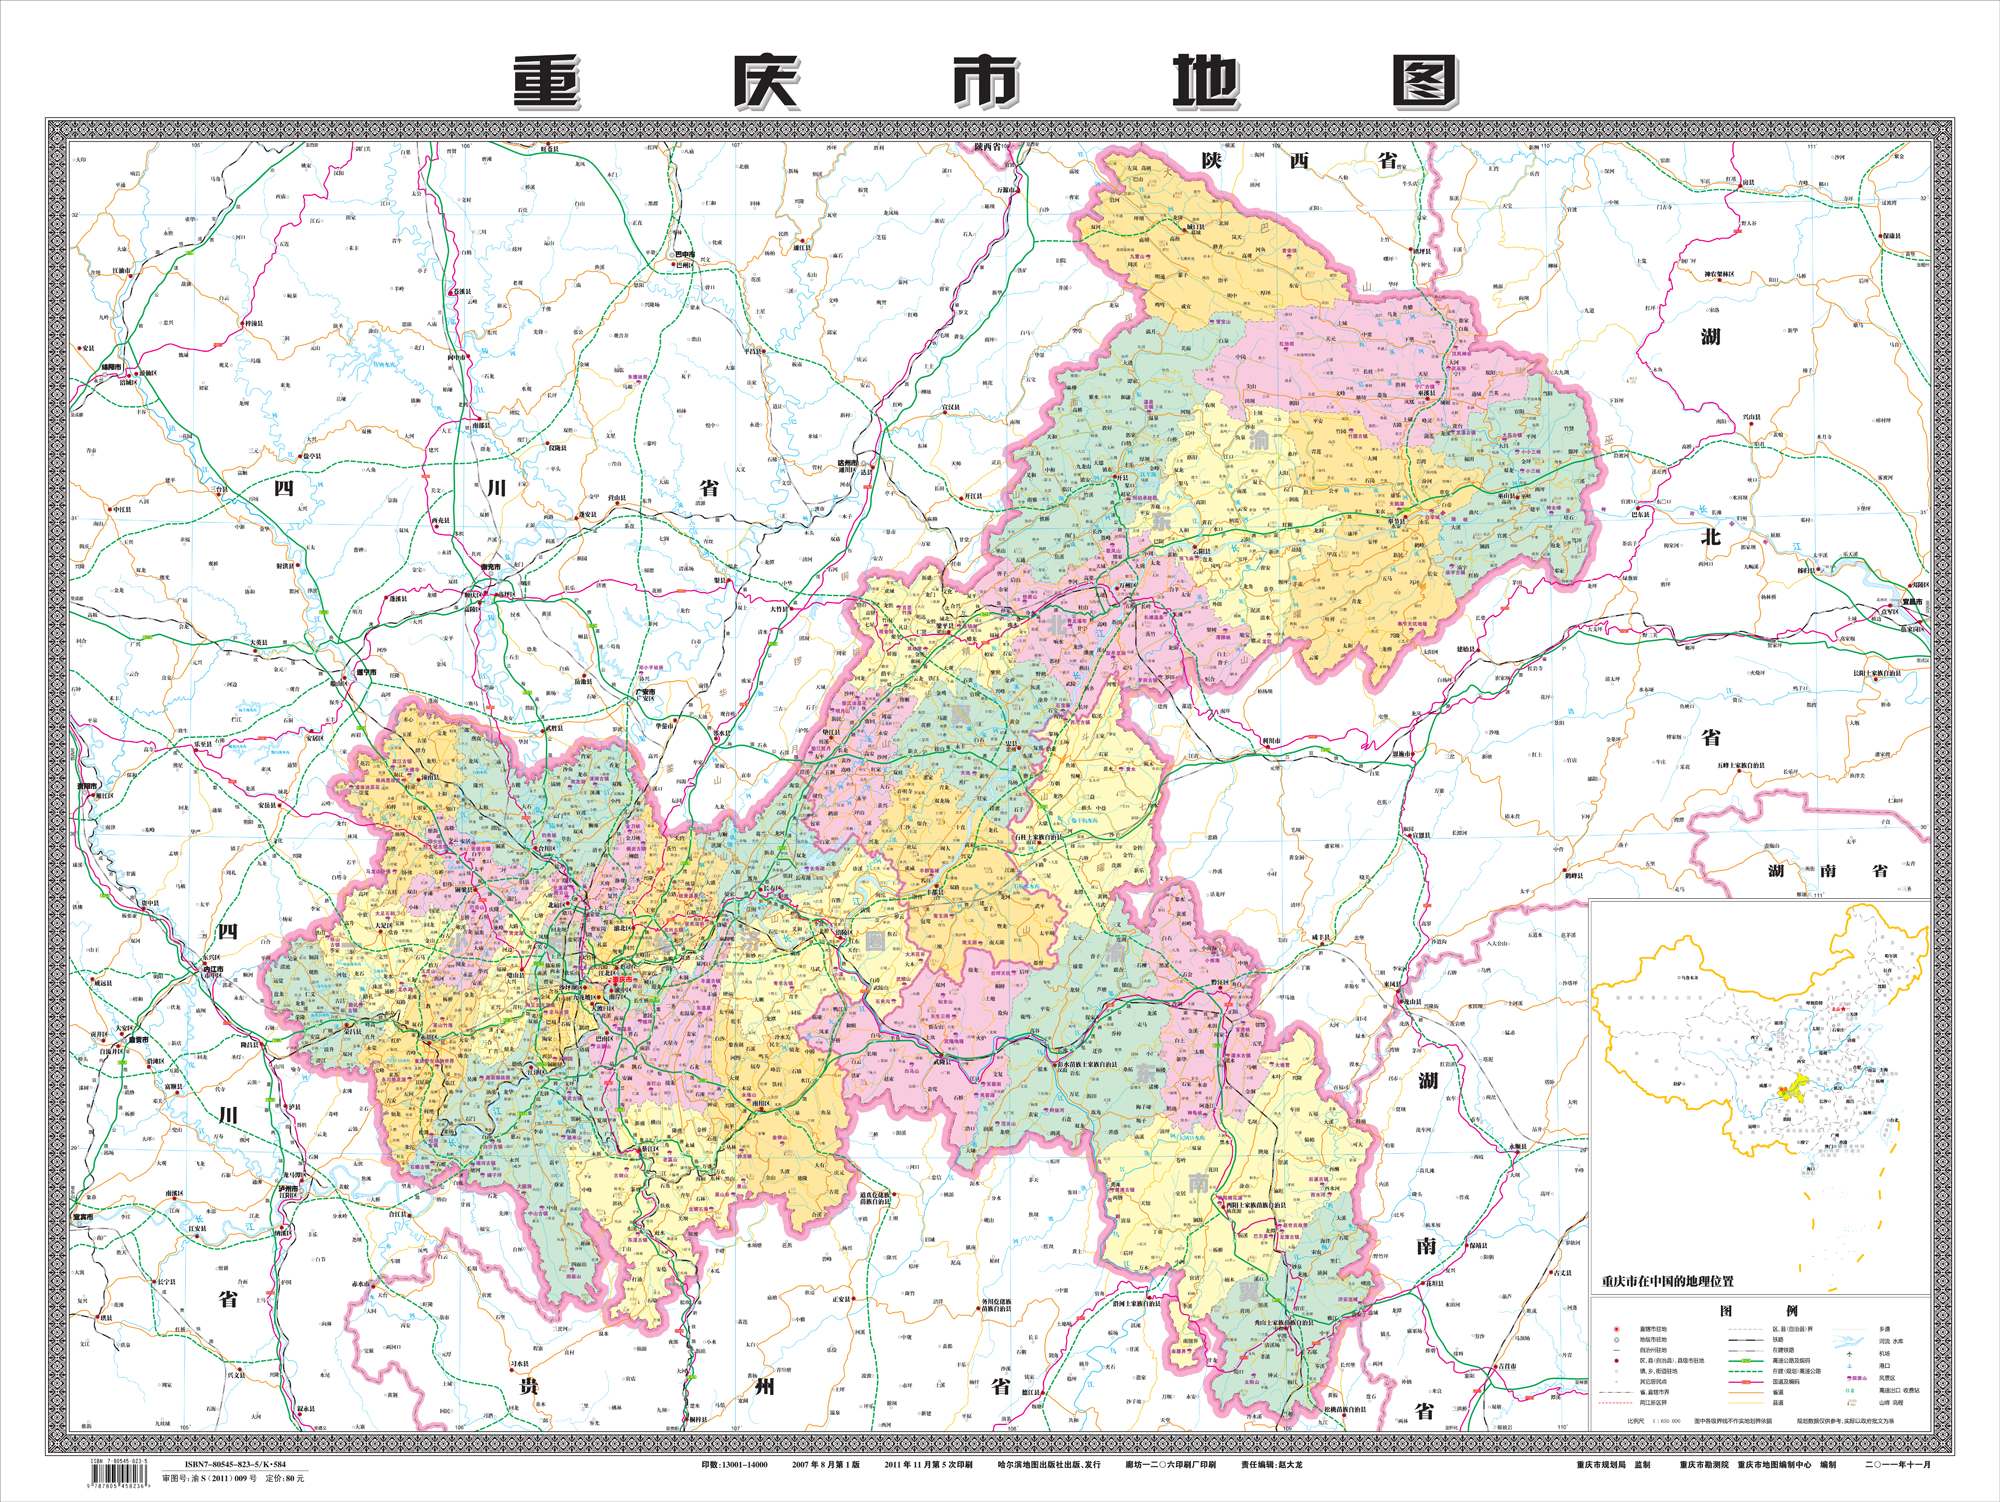 重慶市地圖